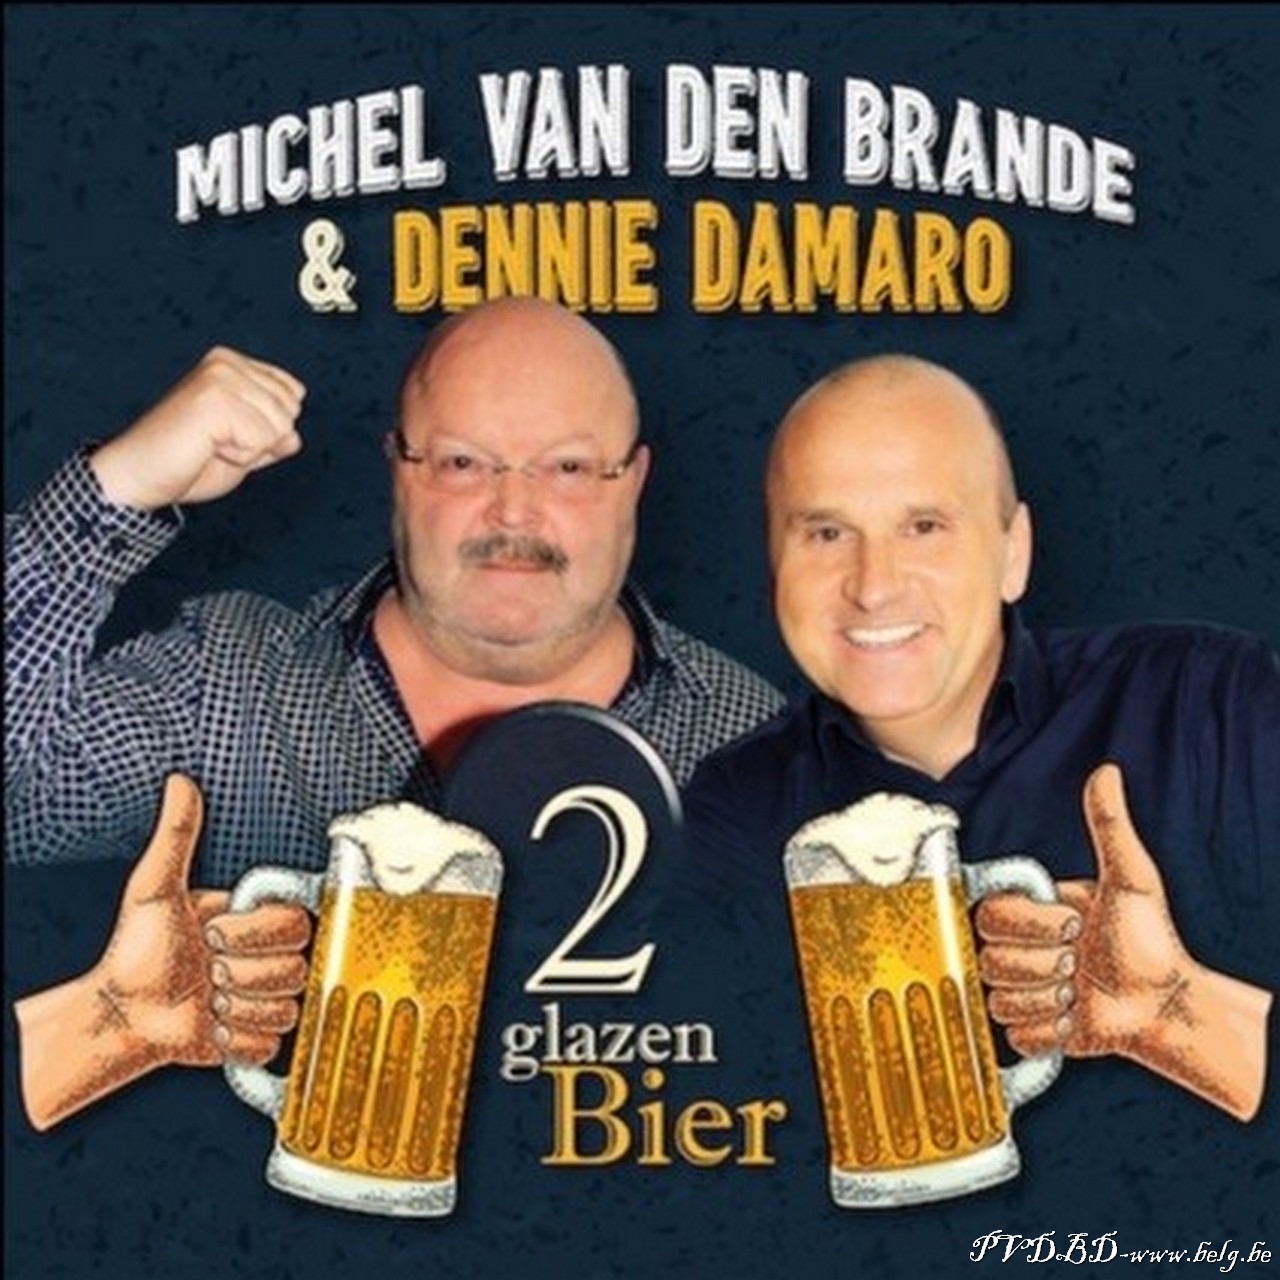 Michel Van den Brande en Dennie Damaro met tweede duetsingle - Hoes Michel Van den Brande Dennie Damaro 2 glazen bier